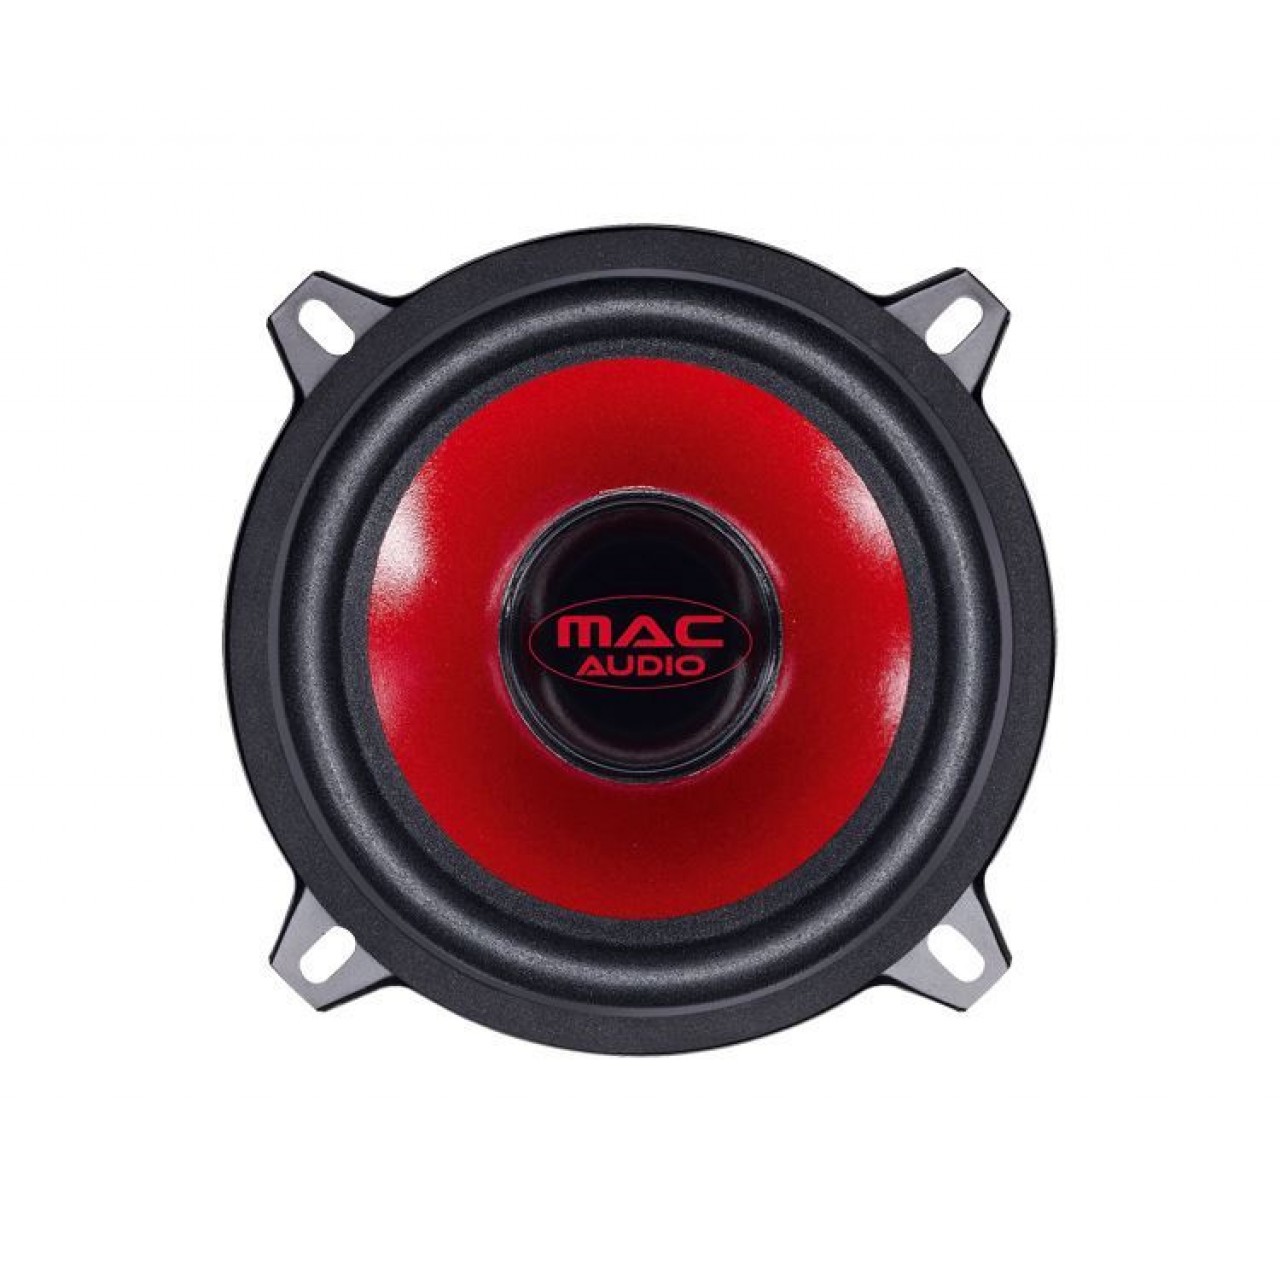 Ηχεία Αυτοκινήτου – Mac Audio APM Fire 2.13